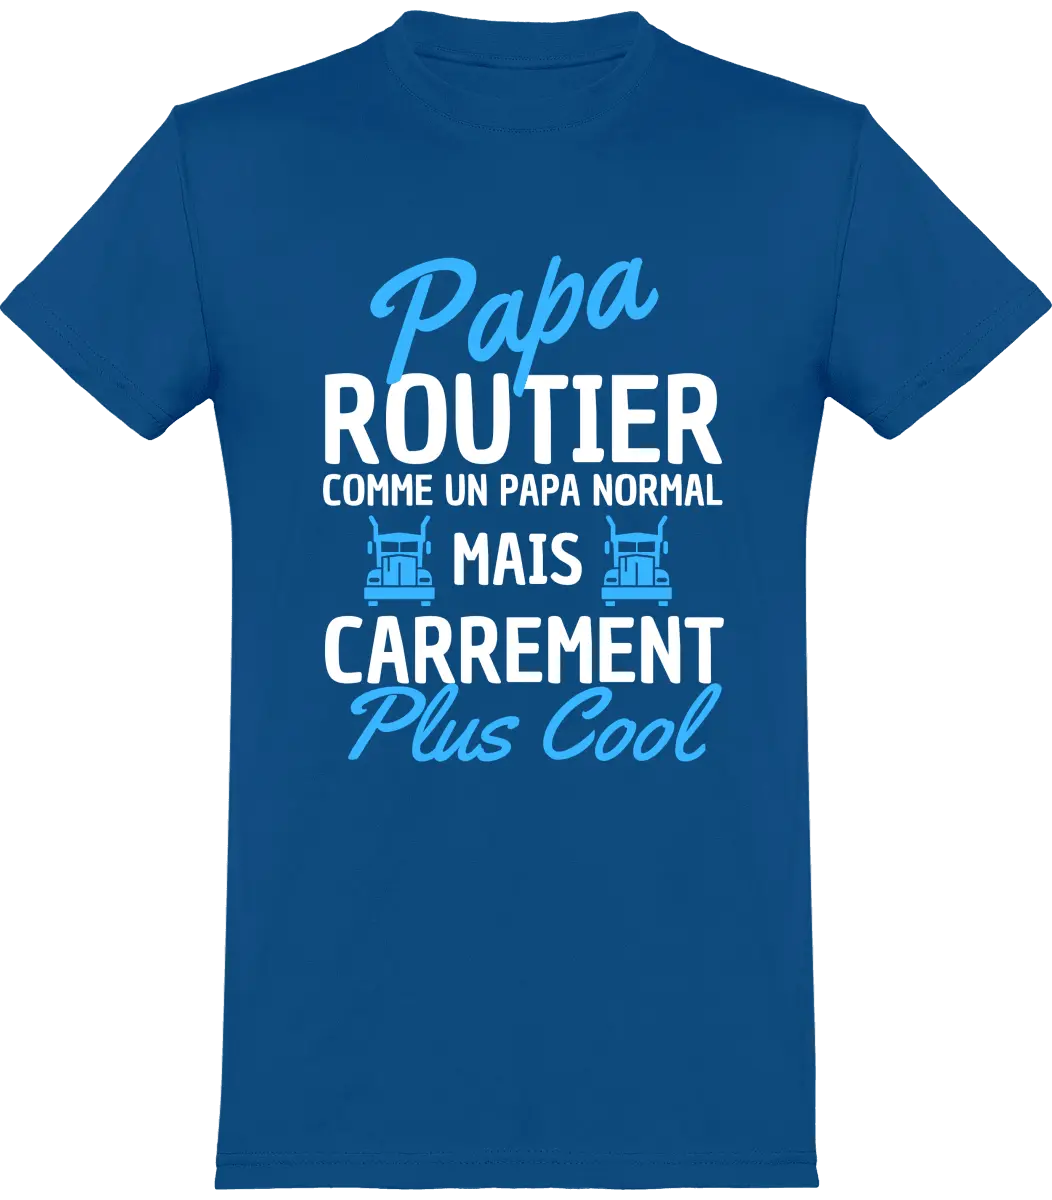 T-shirt Routier "Papa routier comme un papa normal mais carrément plus cool" | Mixte - French Humour